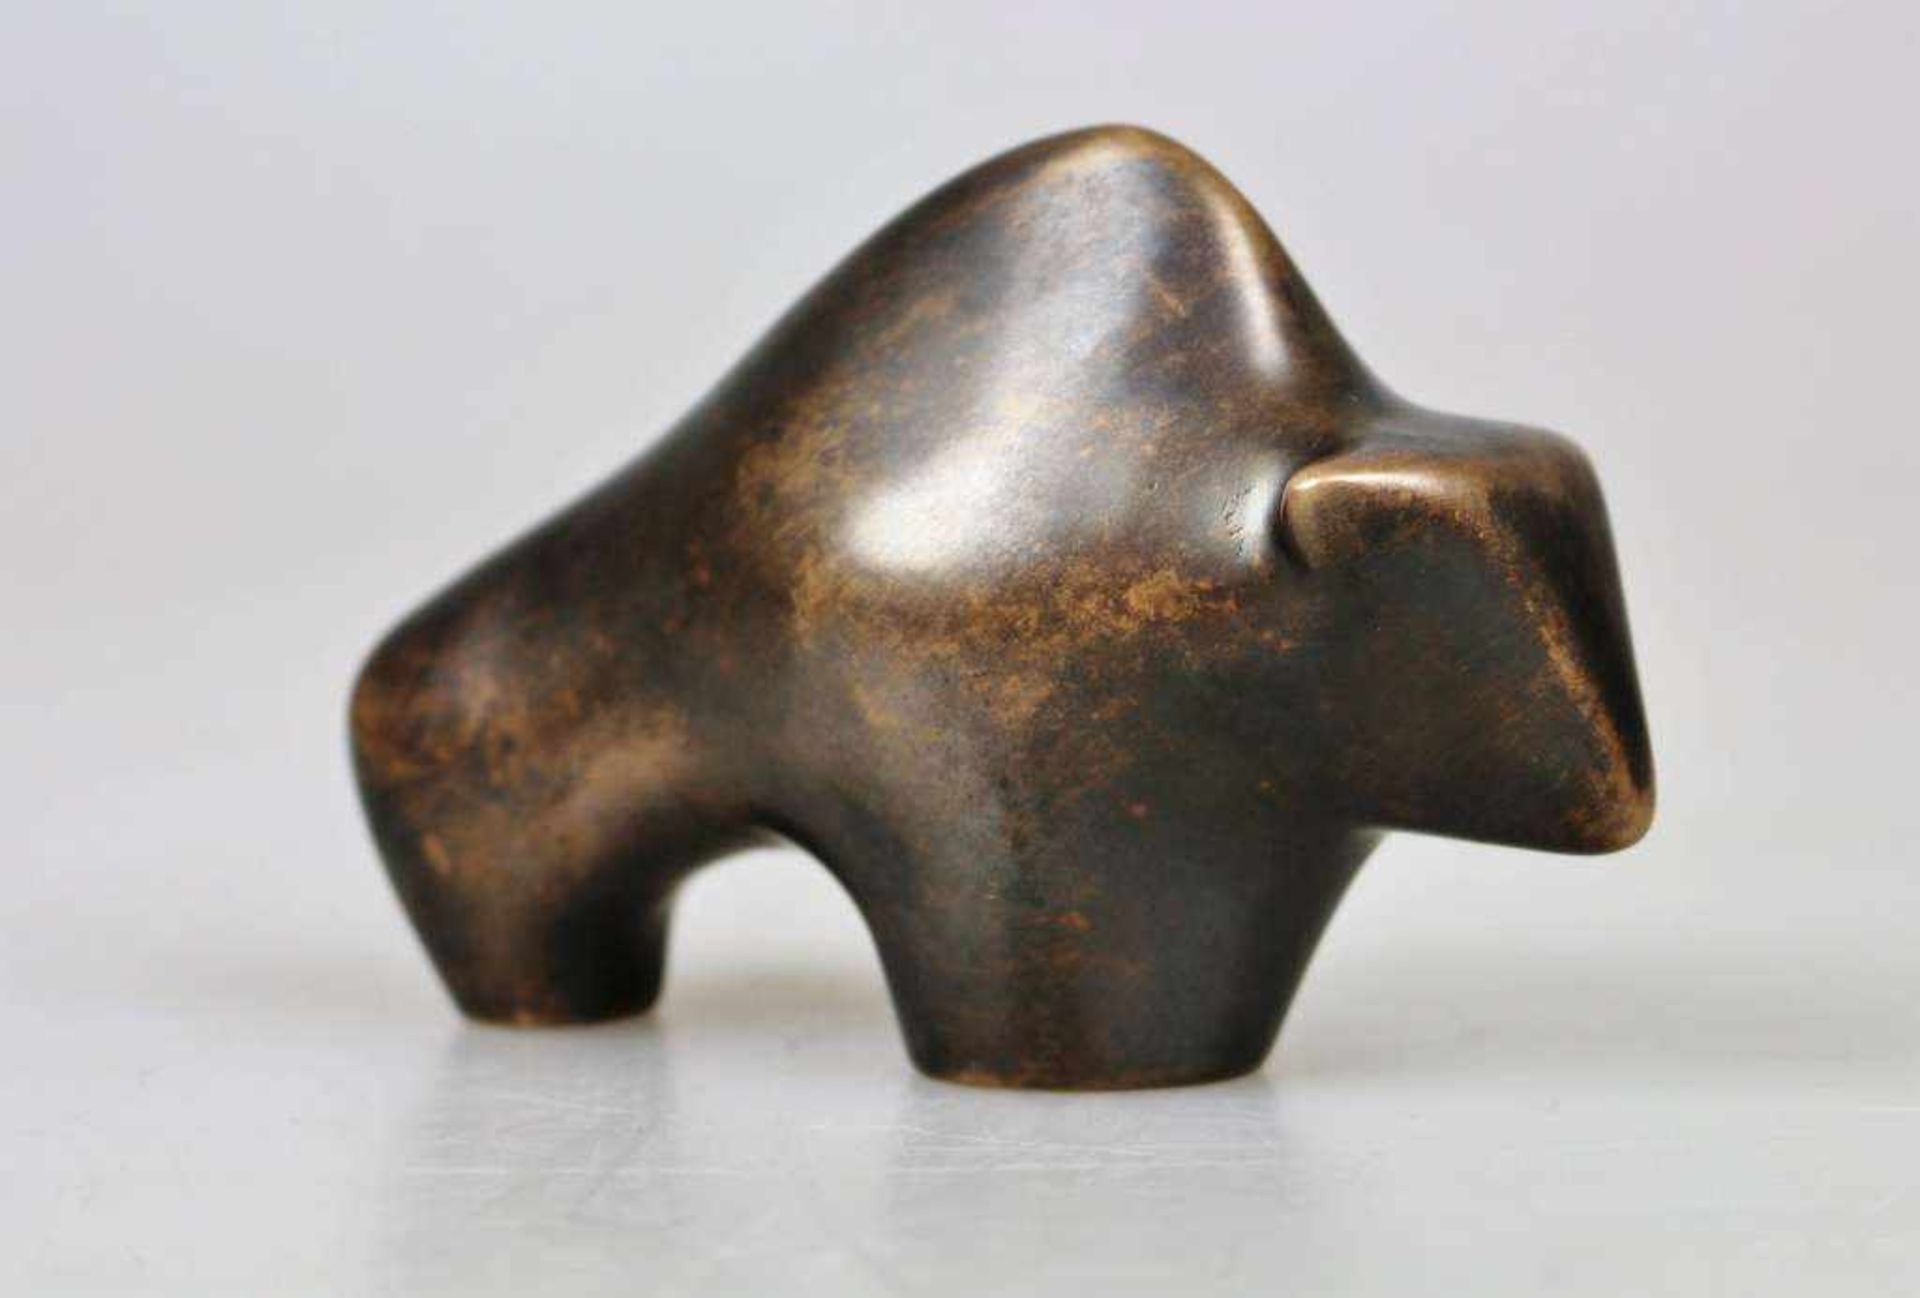 Bronzeskulptur Deus, Bulle. Stempel Gießerei Kunstguss Eschenburg Lahn-Dill GmbH, H: 8 cm.